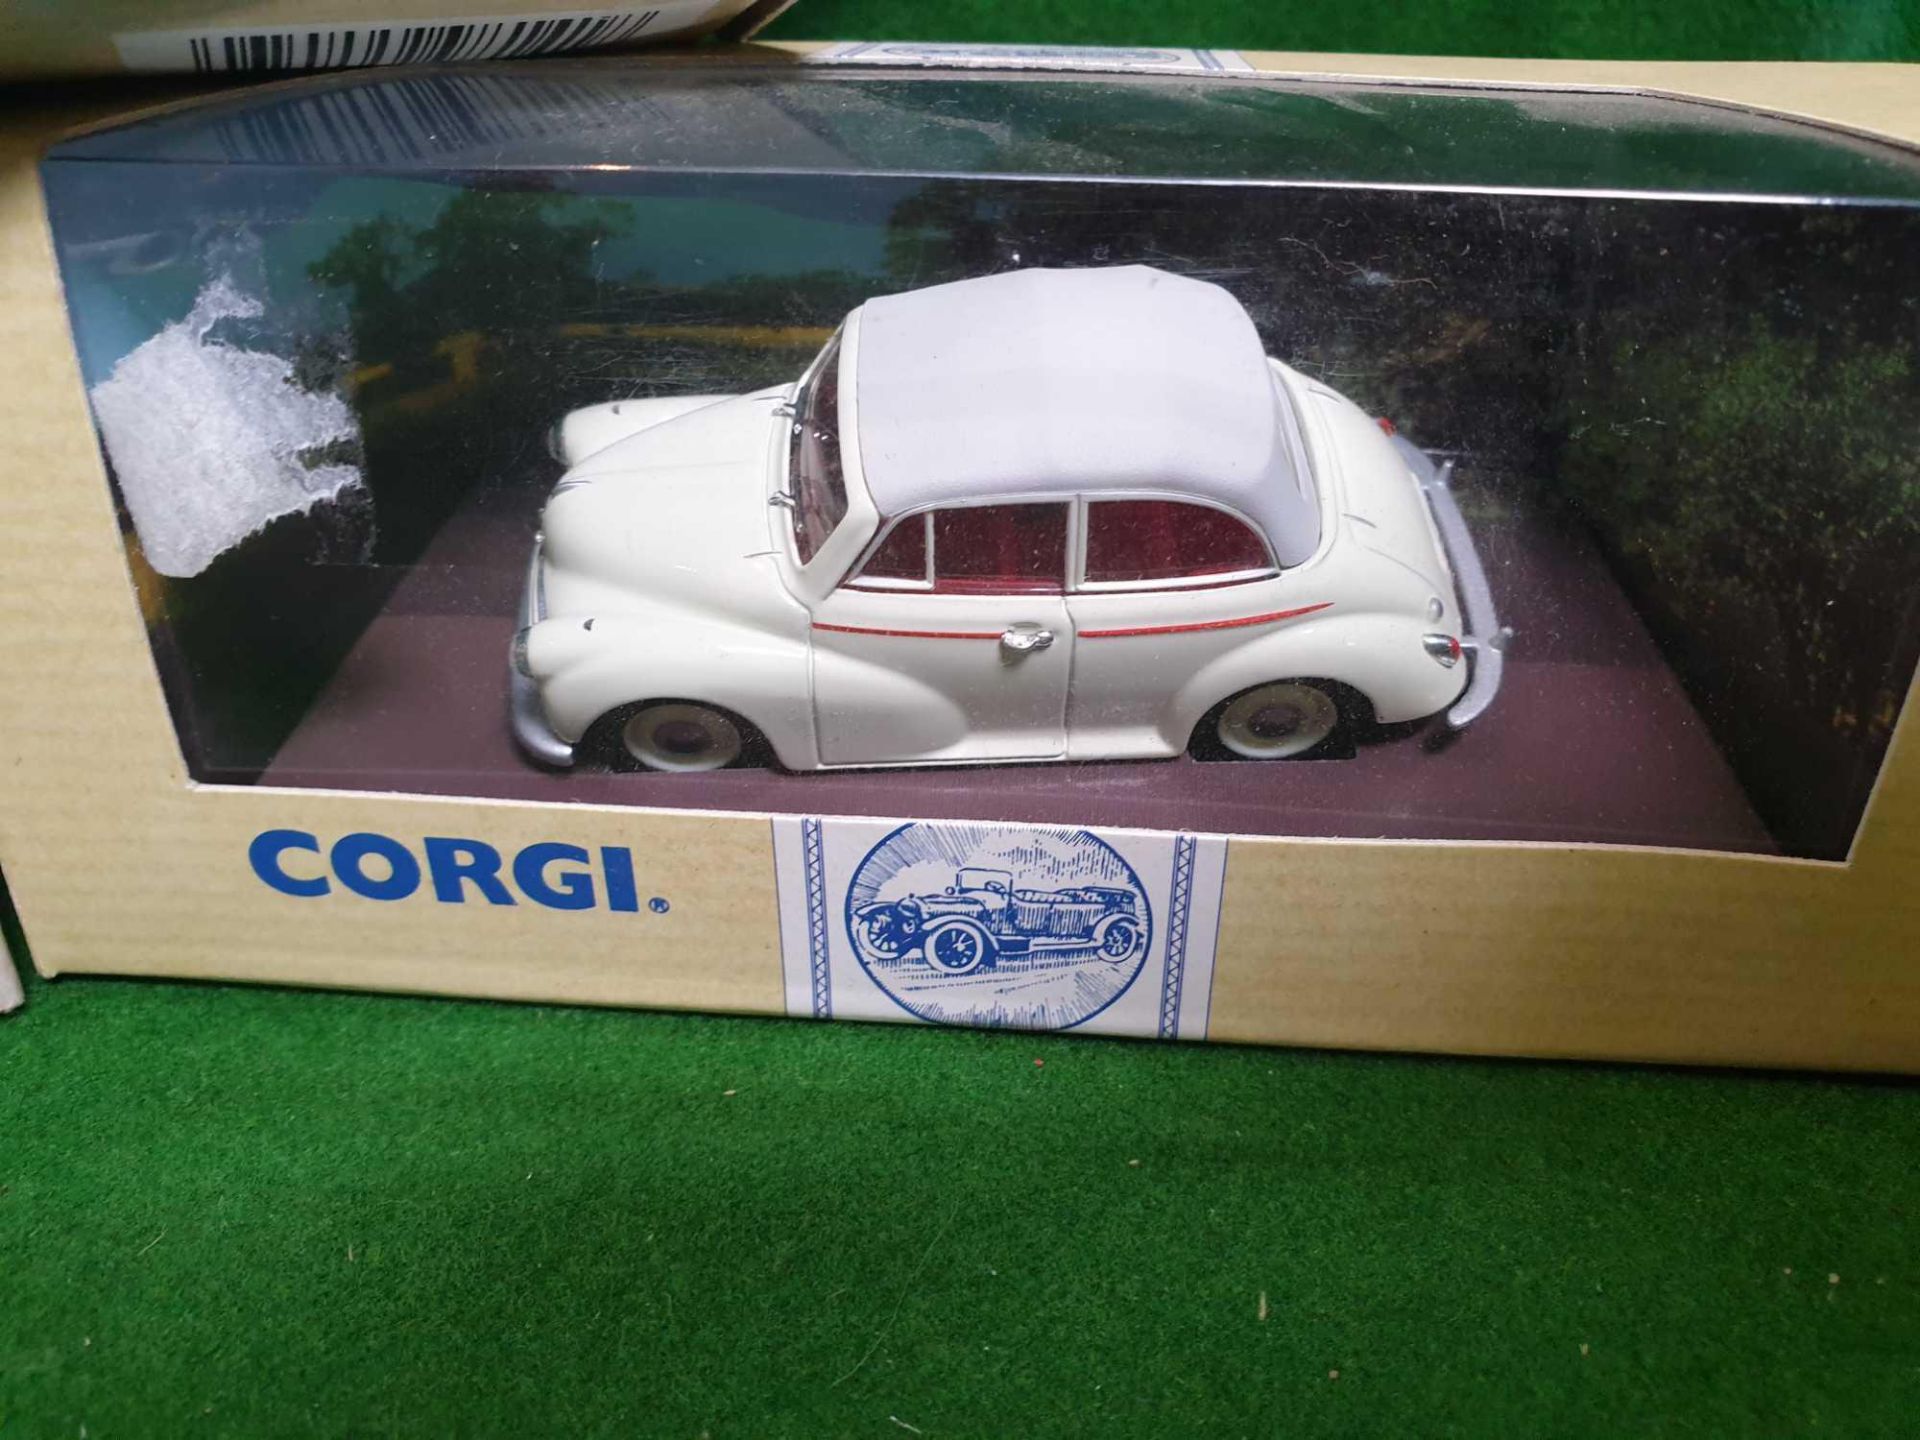 A Set Of 3 X Corgi Classic Vehicles Diecast Models Comprising Of #96750 Corgi Morris Minor - Image 4 of 4